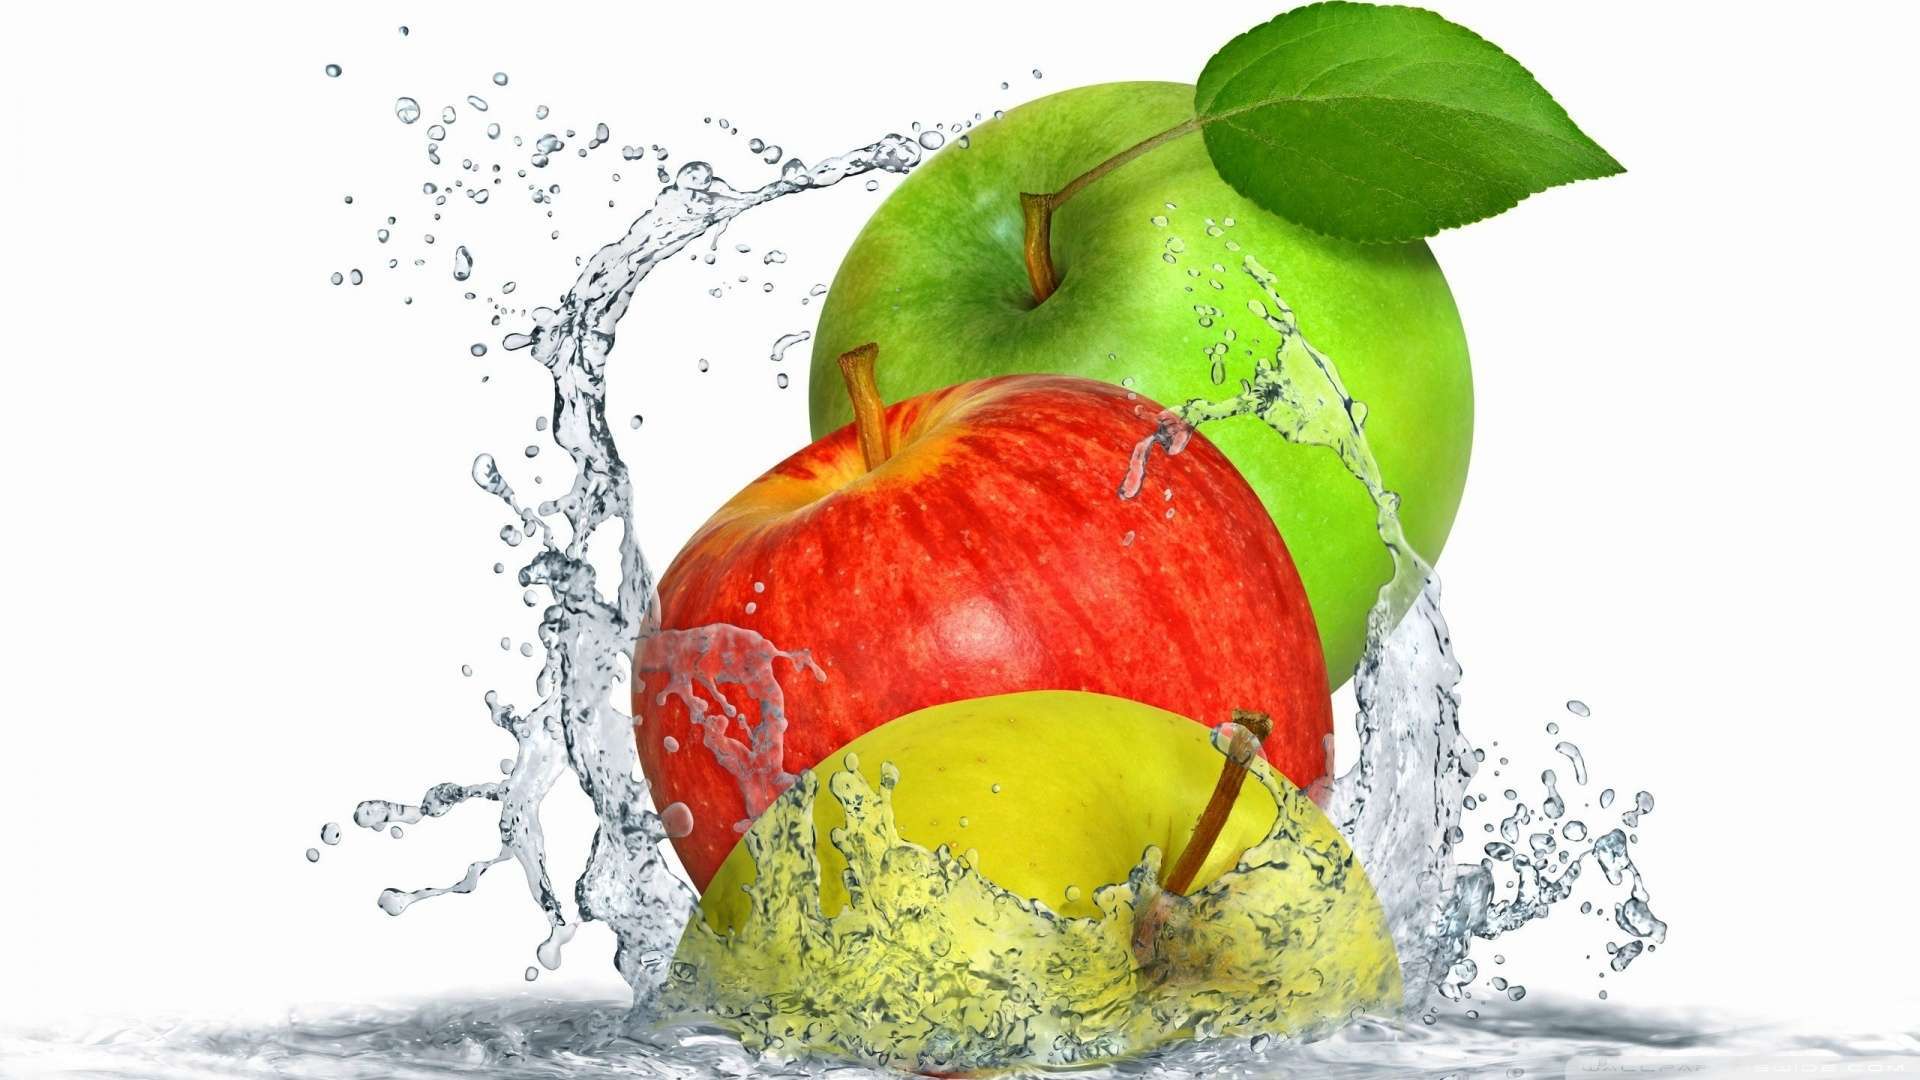 Apples Splashing Water Wallpaper 1080p HD